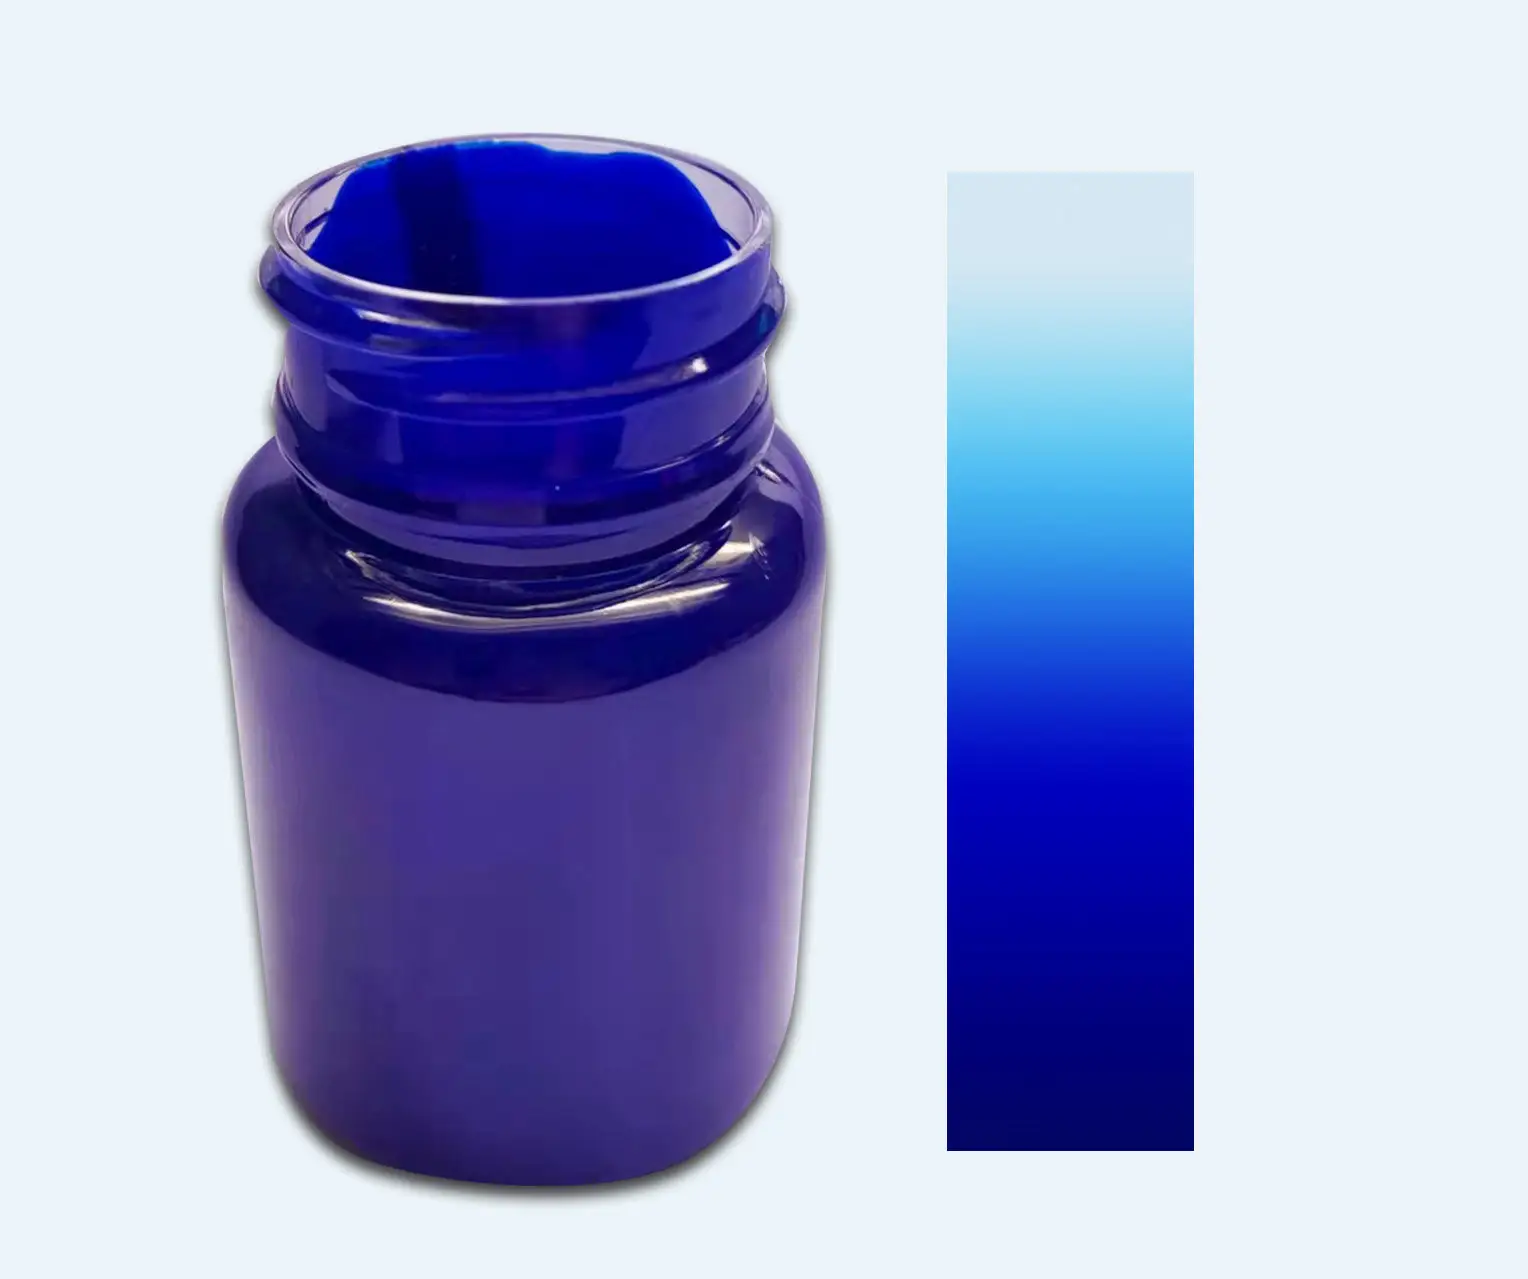 물 기반 높은 저항 phthalocyanin 블루 안료 붙여 스프레이 페인트 코팅 인쇄 레터링 등